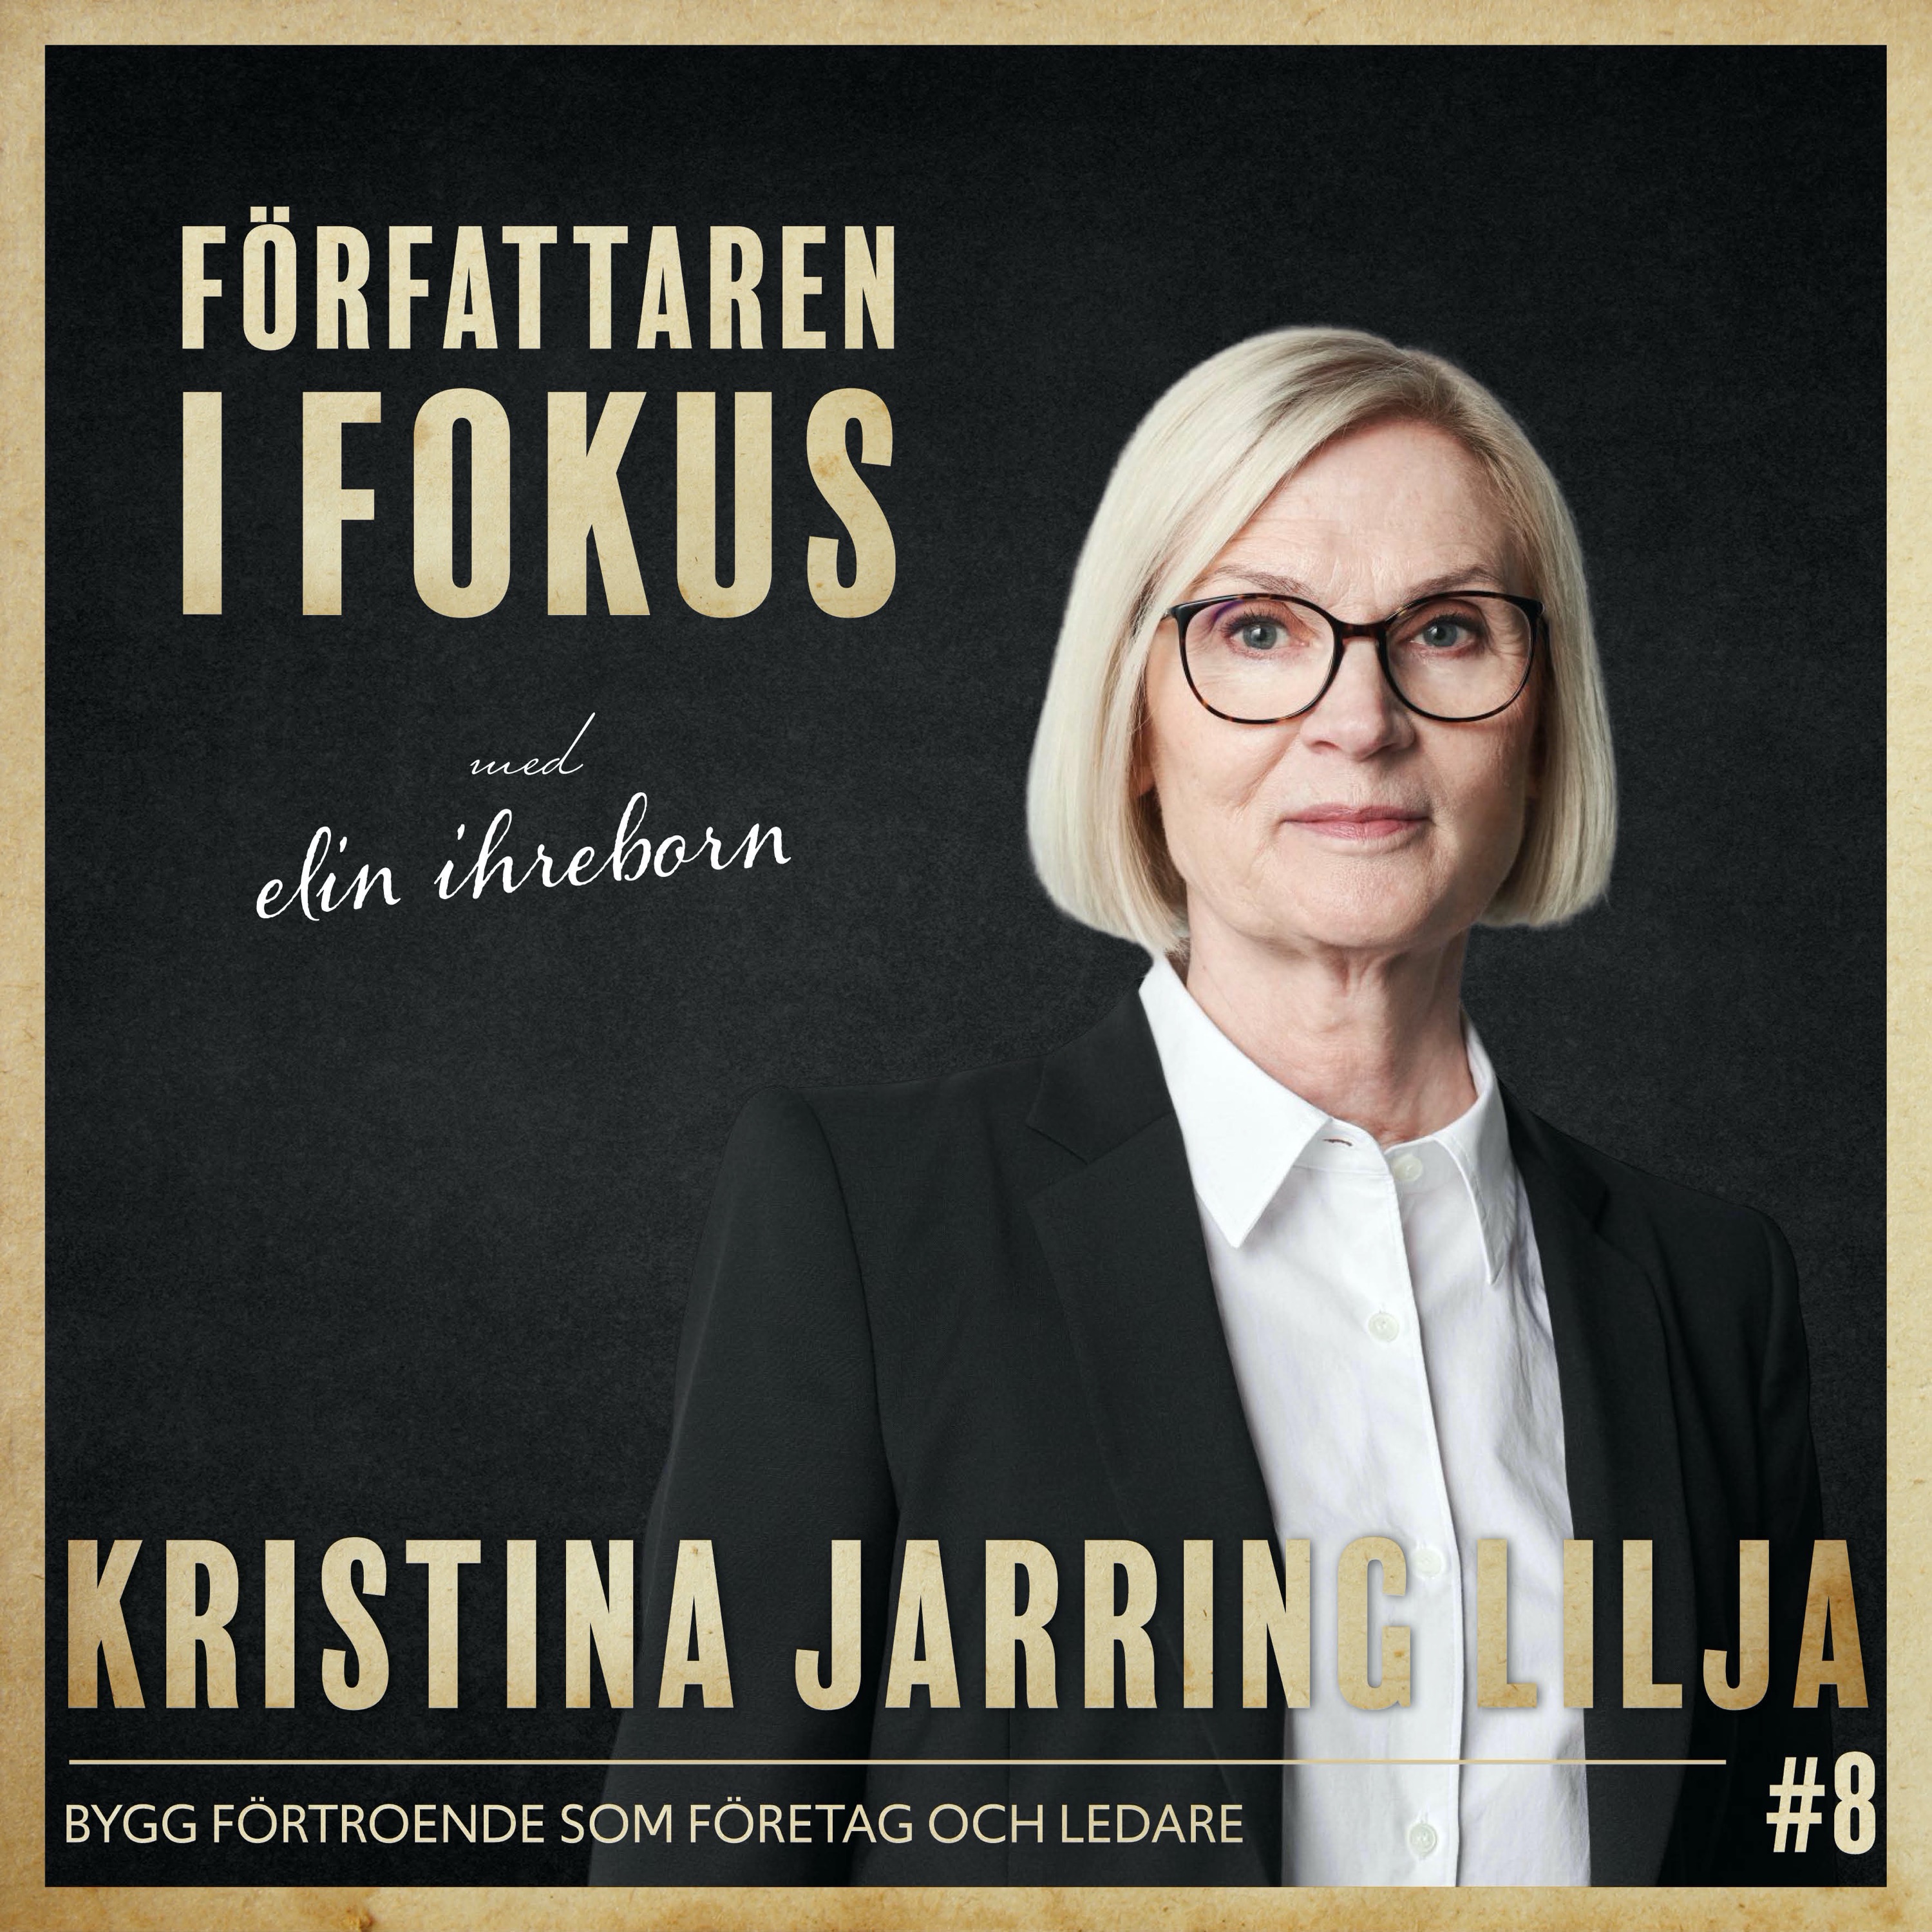 Kristina Jarring Lilja – Bygg förtroende som företag och ledare